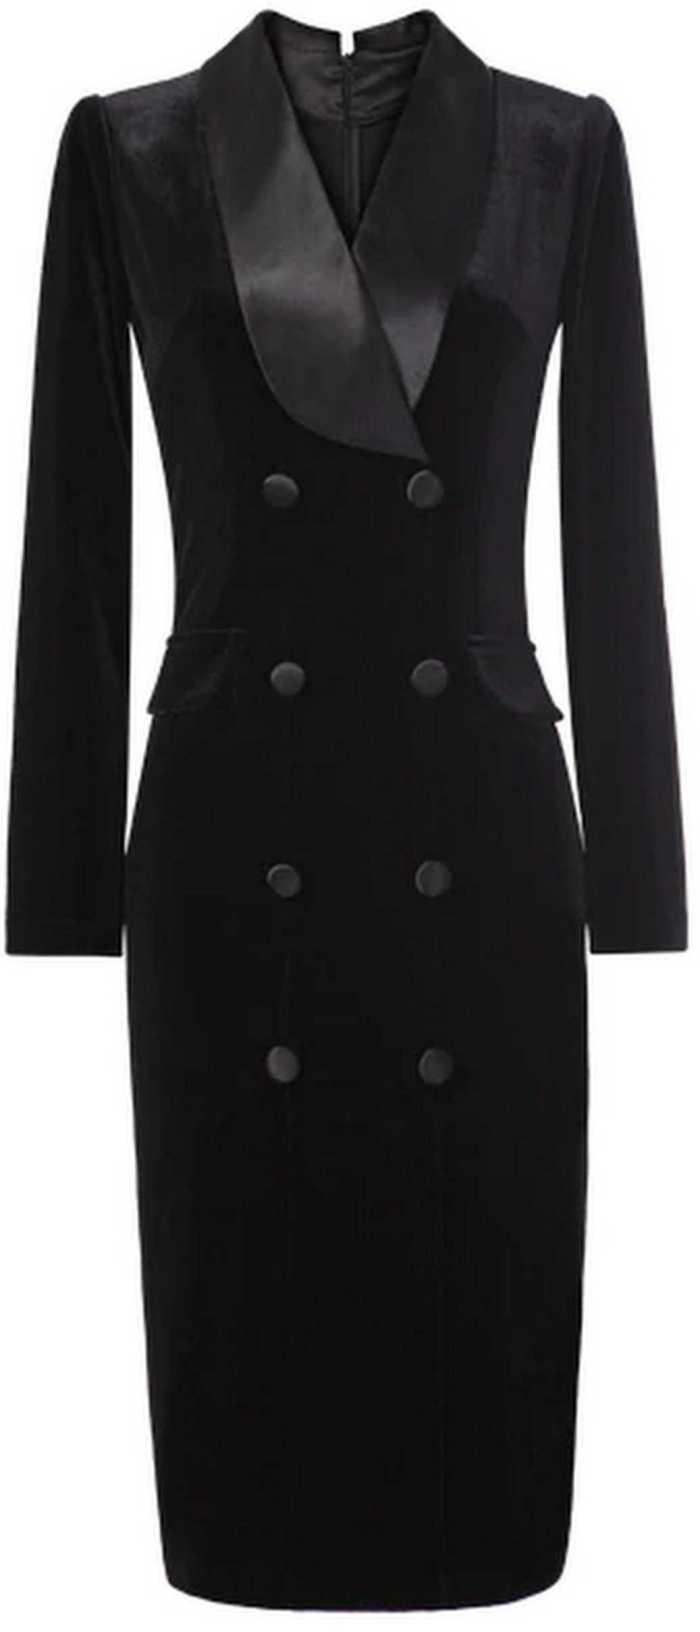 Black Double-Breasted Velvet Dress DESIGNER INSPIRED FASHIONS